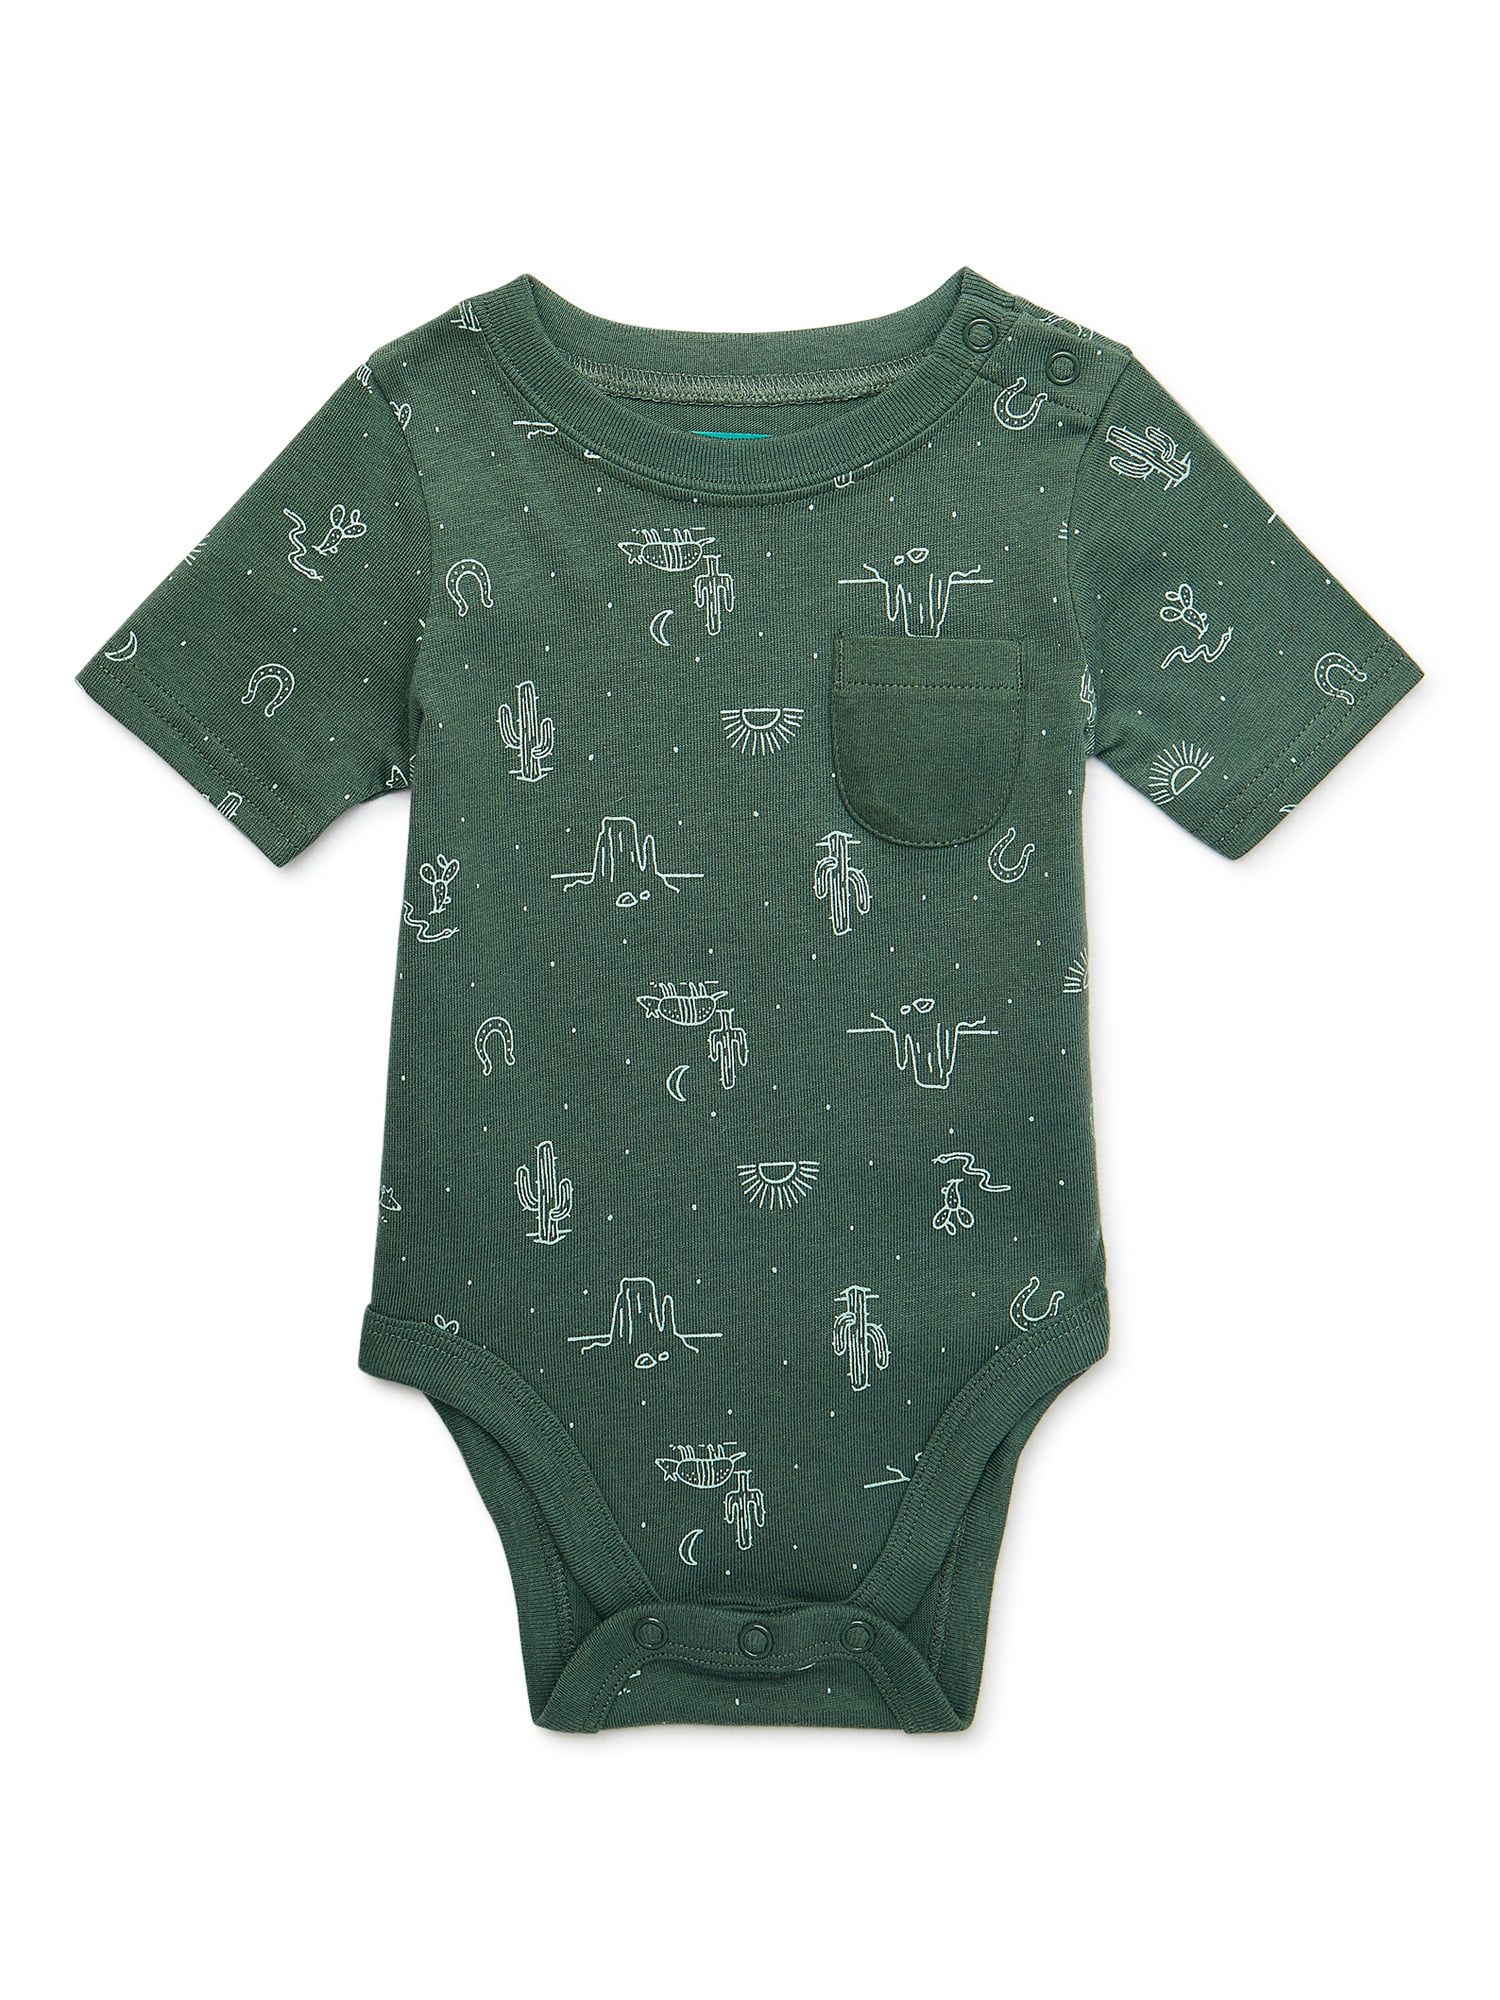 Garanimals Baby Boy Short Sleeve Print Bodysuit, Sizes 0-24 Months | Walmart (US)